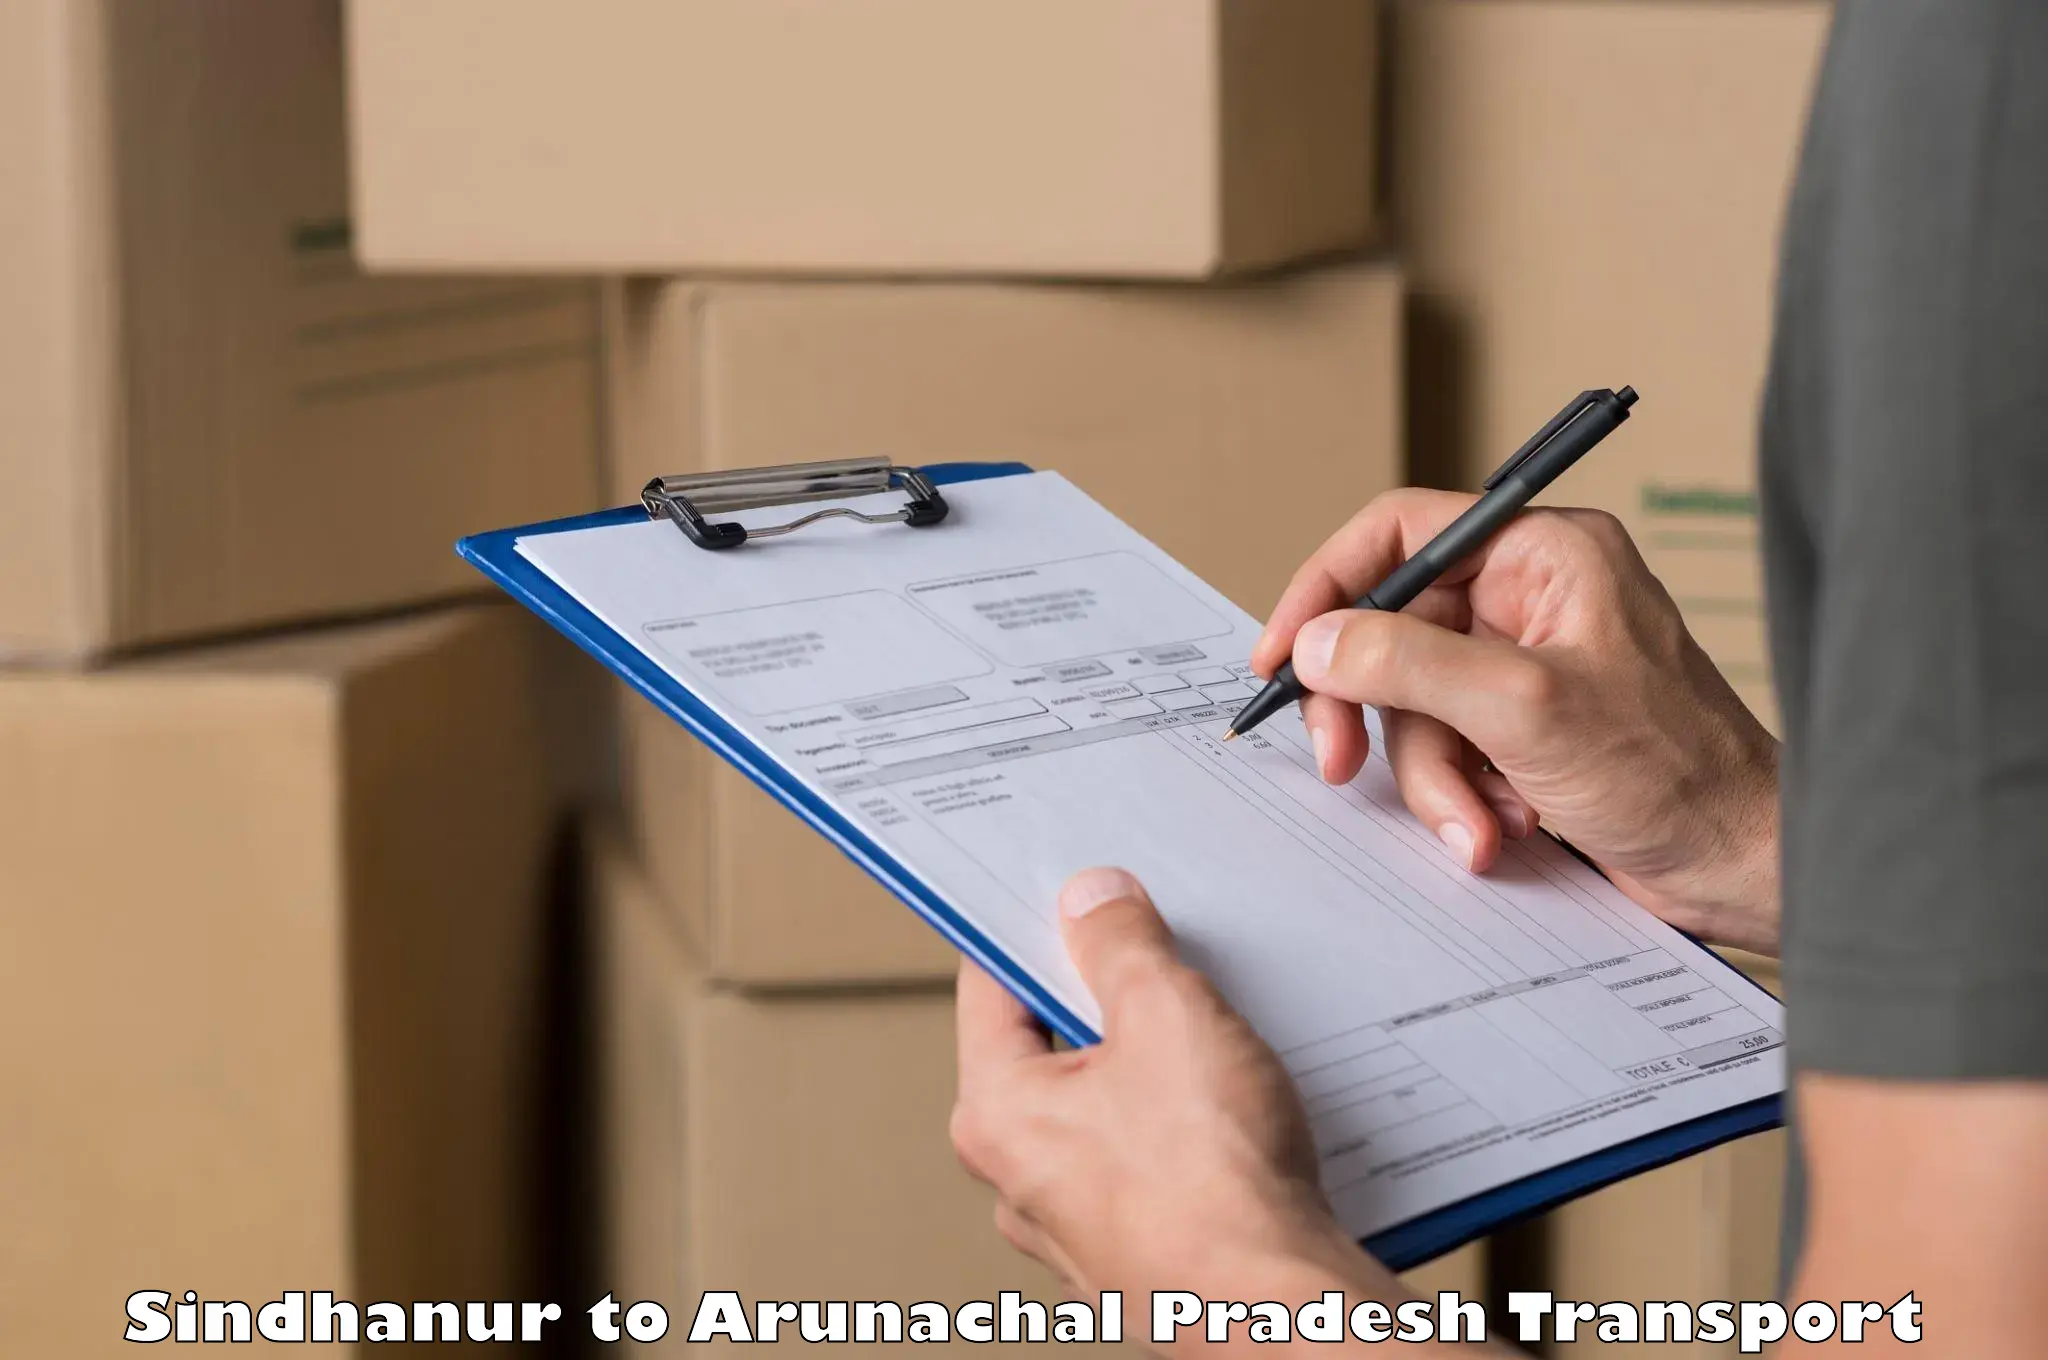 Transport services Sindhanur to Arunachal Pradesh